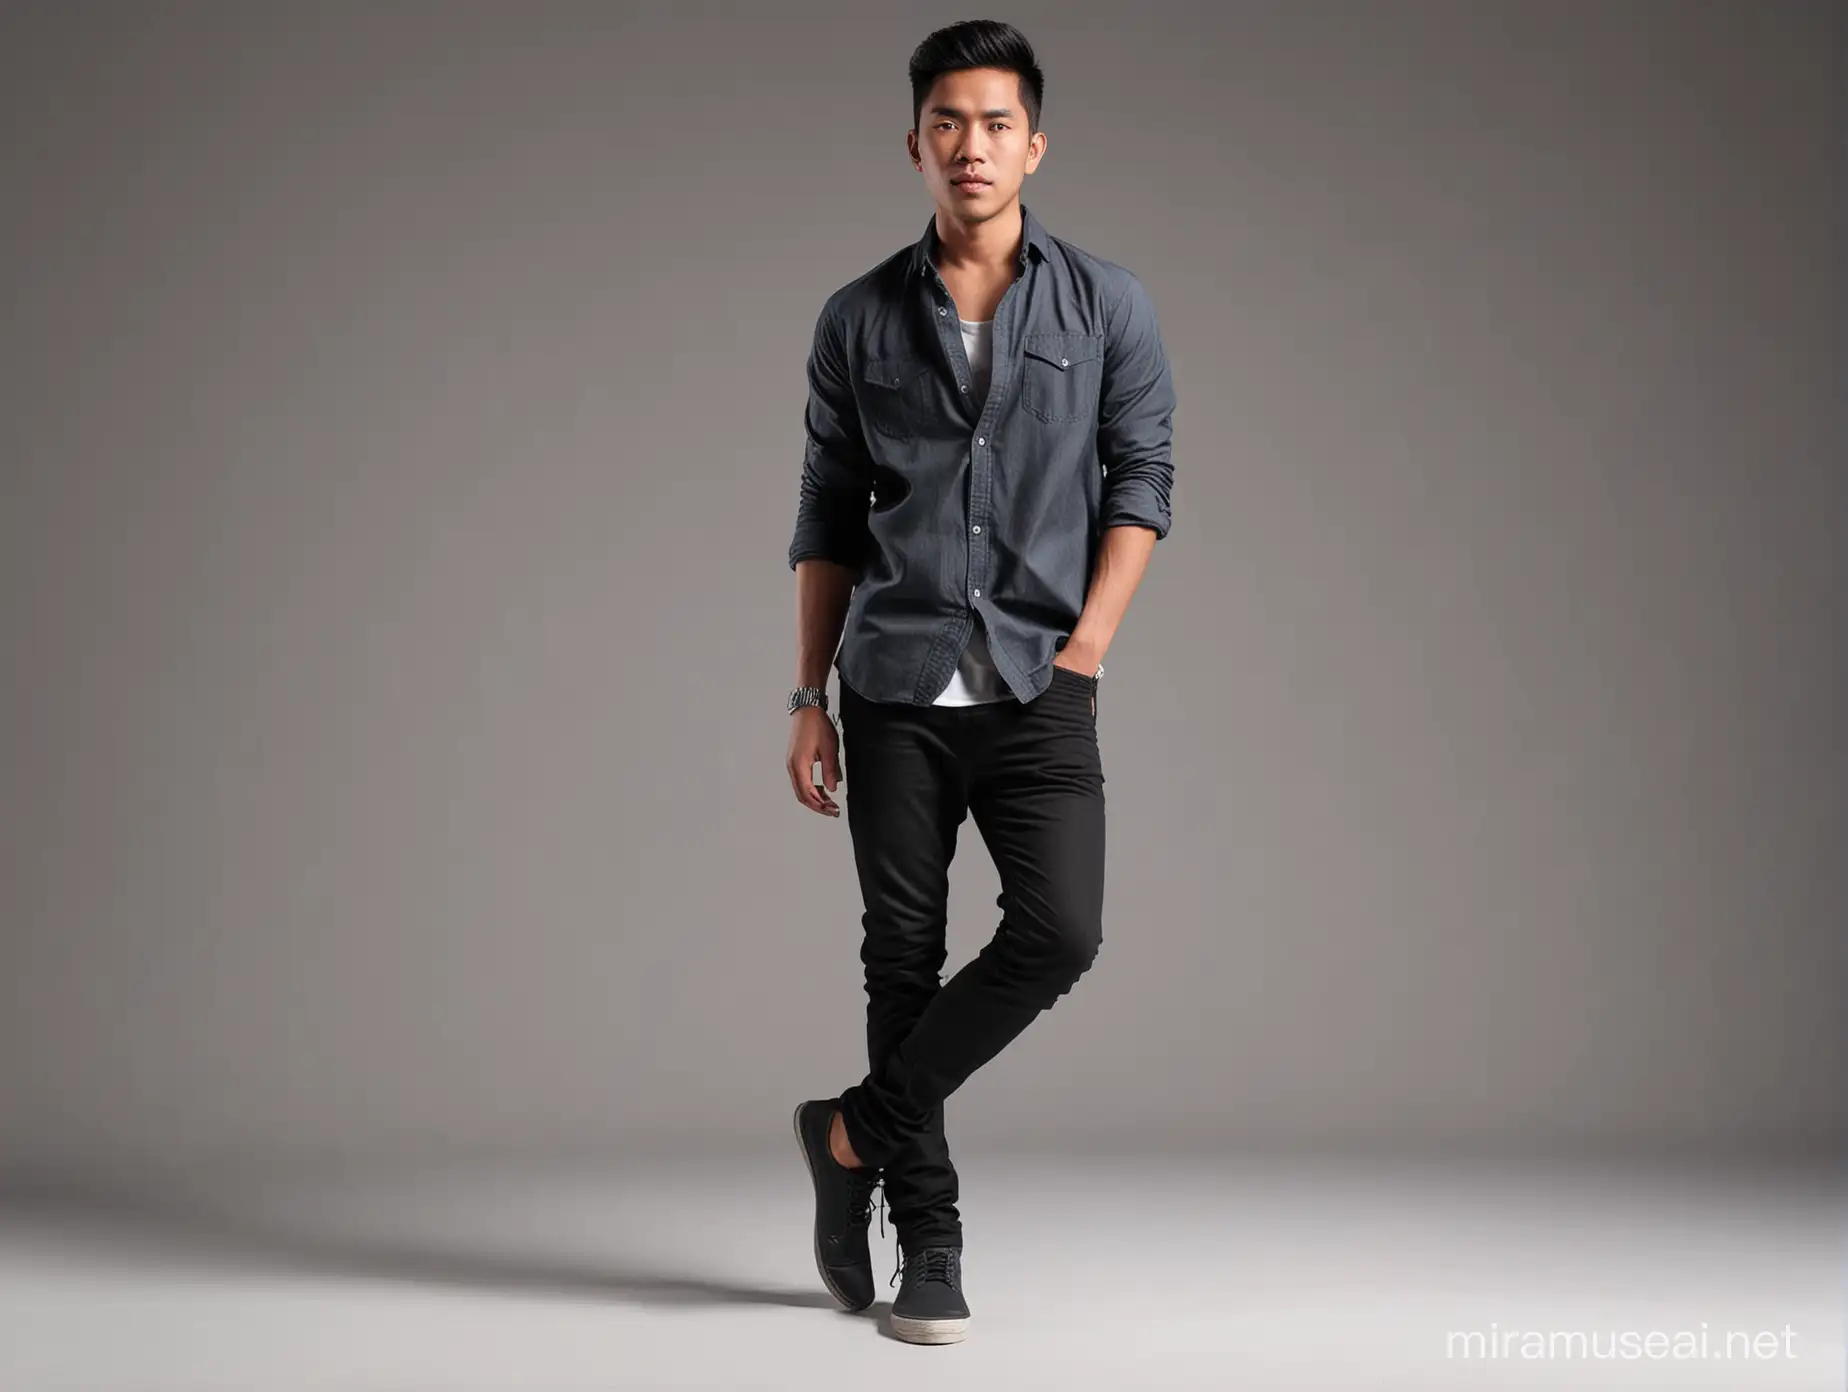 Realistic Indonesian Male Fashion Model in Studio Portrait